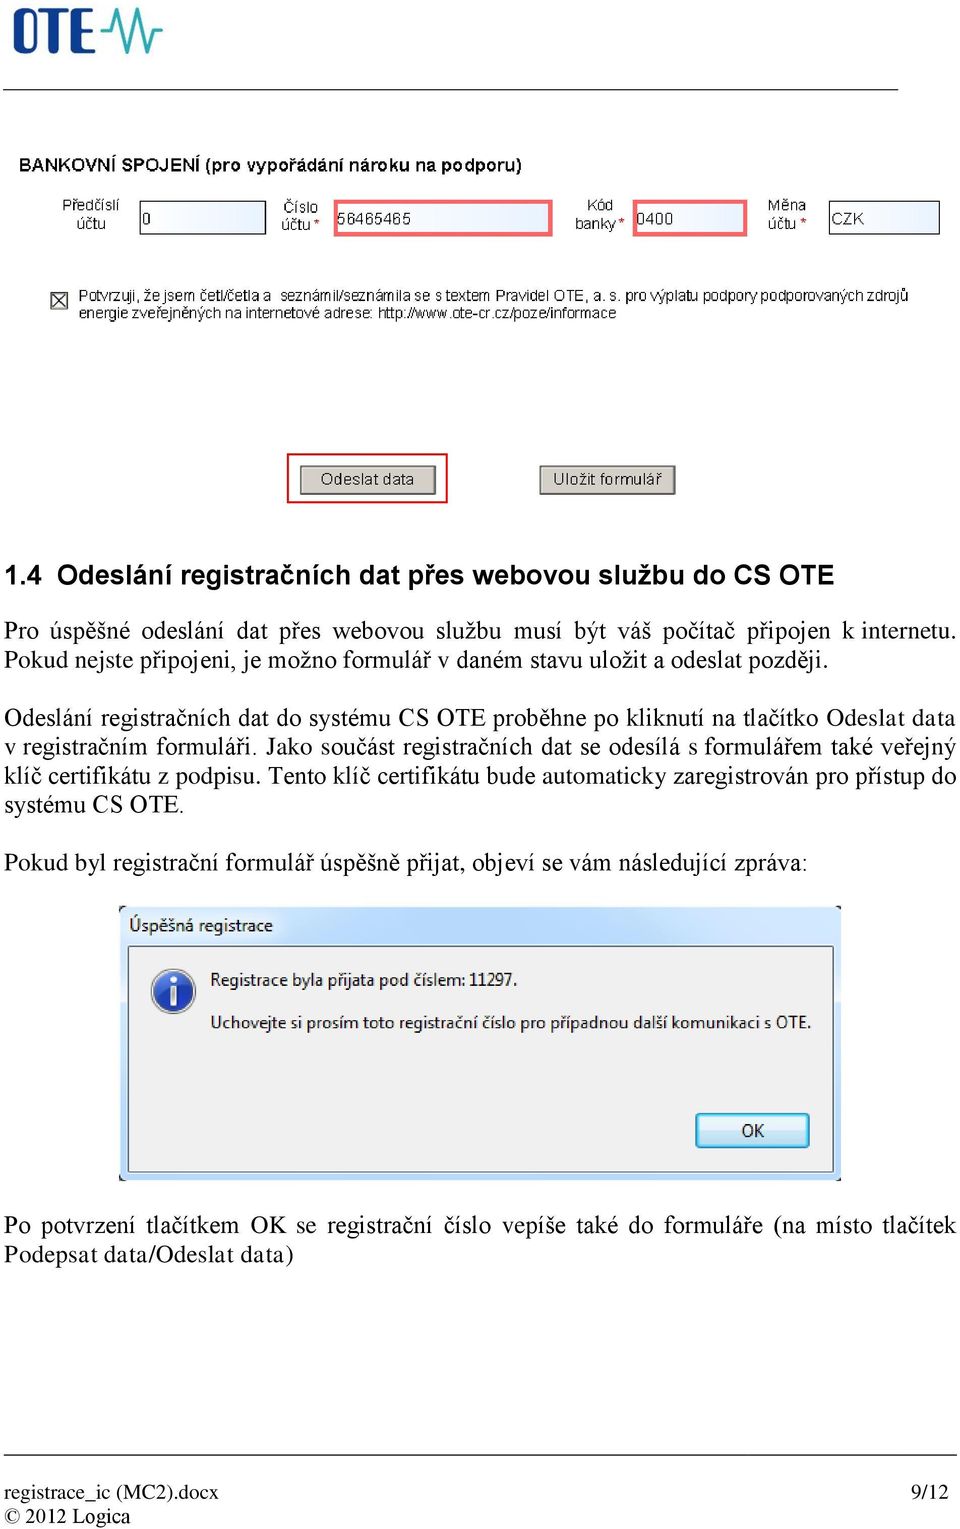 Odeslání registračních dat do systému CS OTE proběhne po kliknutí na tlačítko Odeslat data v registračním formuláři.